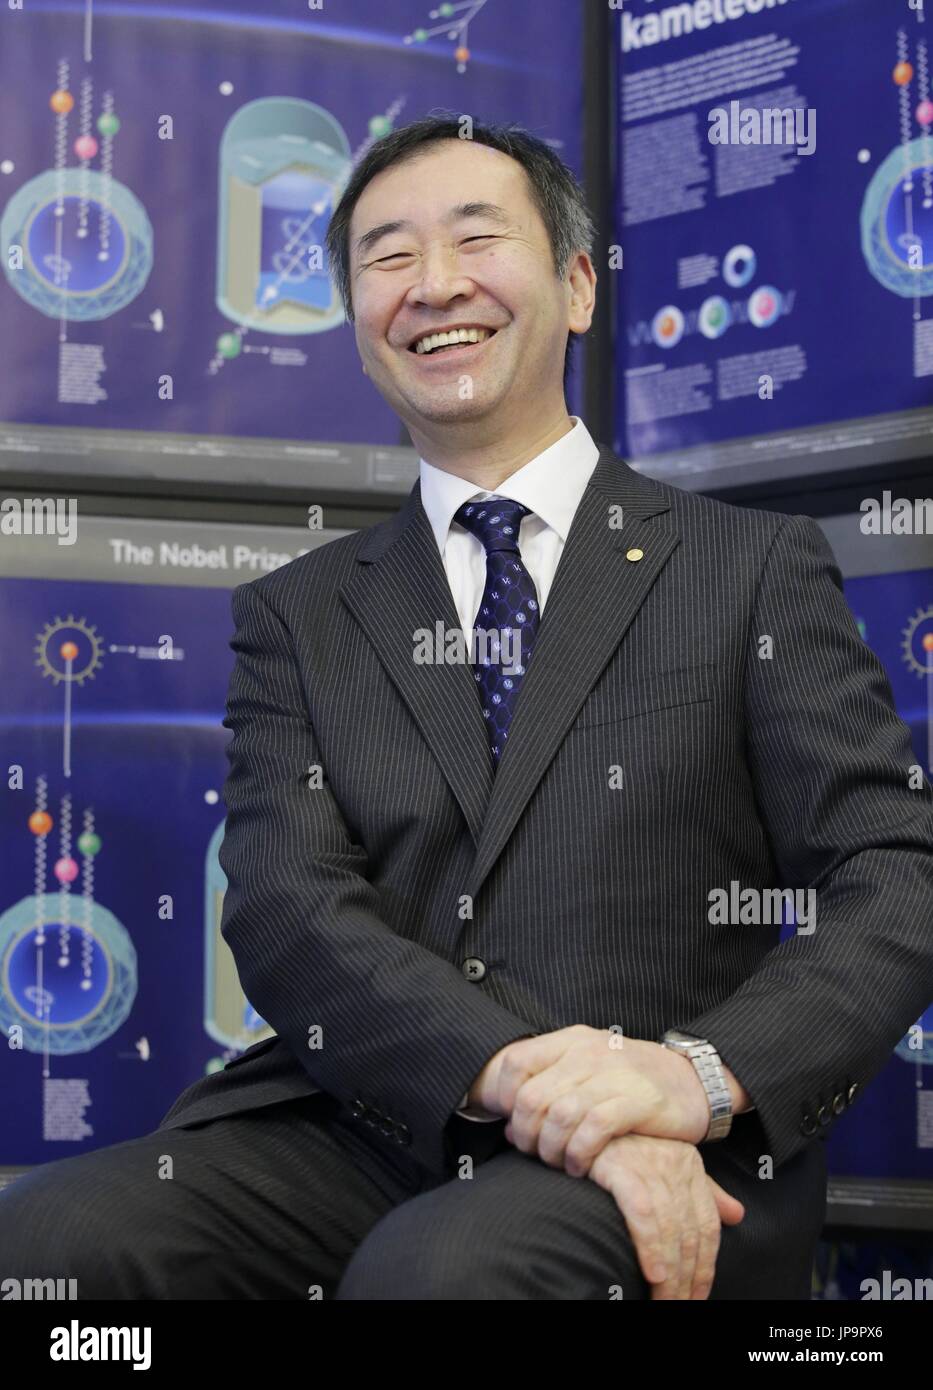 El científico japonés Takaaki Kajita, quien compartió en 2015 el Premio Nobel de física con la canadiense Arthur McDonald, da una entrevista con los medios de comunicación en Estocolmo el 7 de diciembre de 2015. Kajita expresó su gratitud por el apoyo de personas en Kamioka, la comunidad japonesa que aloja el Super-Kamiokande neutrino observatory. (Kyodo) ==Kyodo Foto de stock